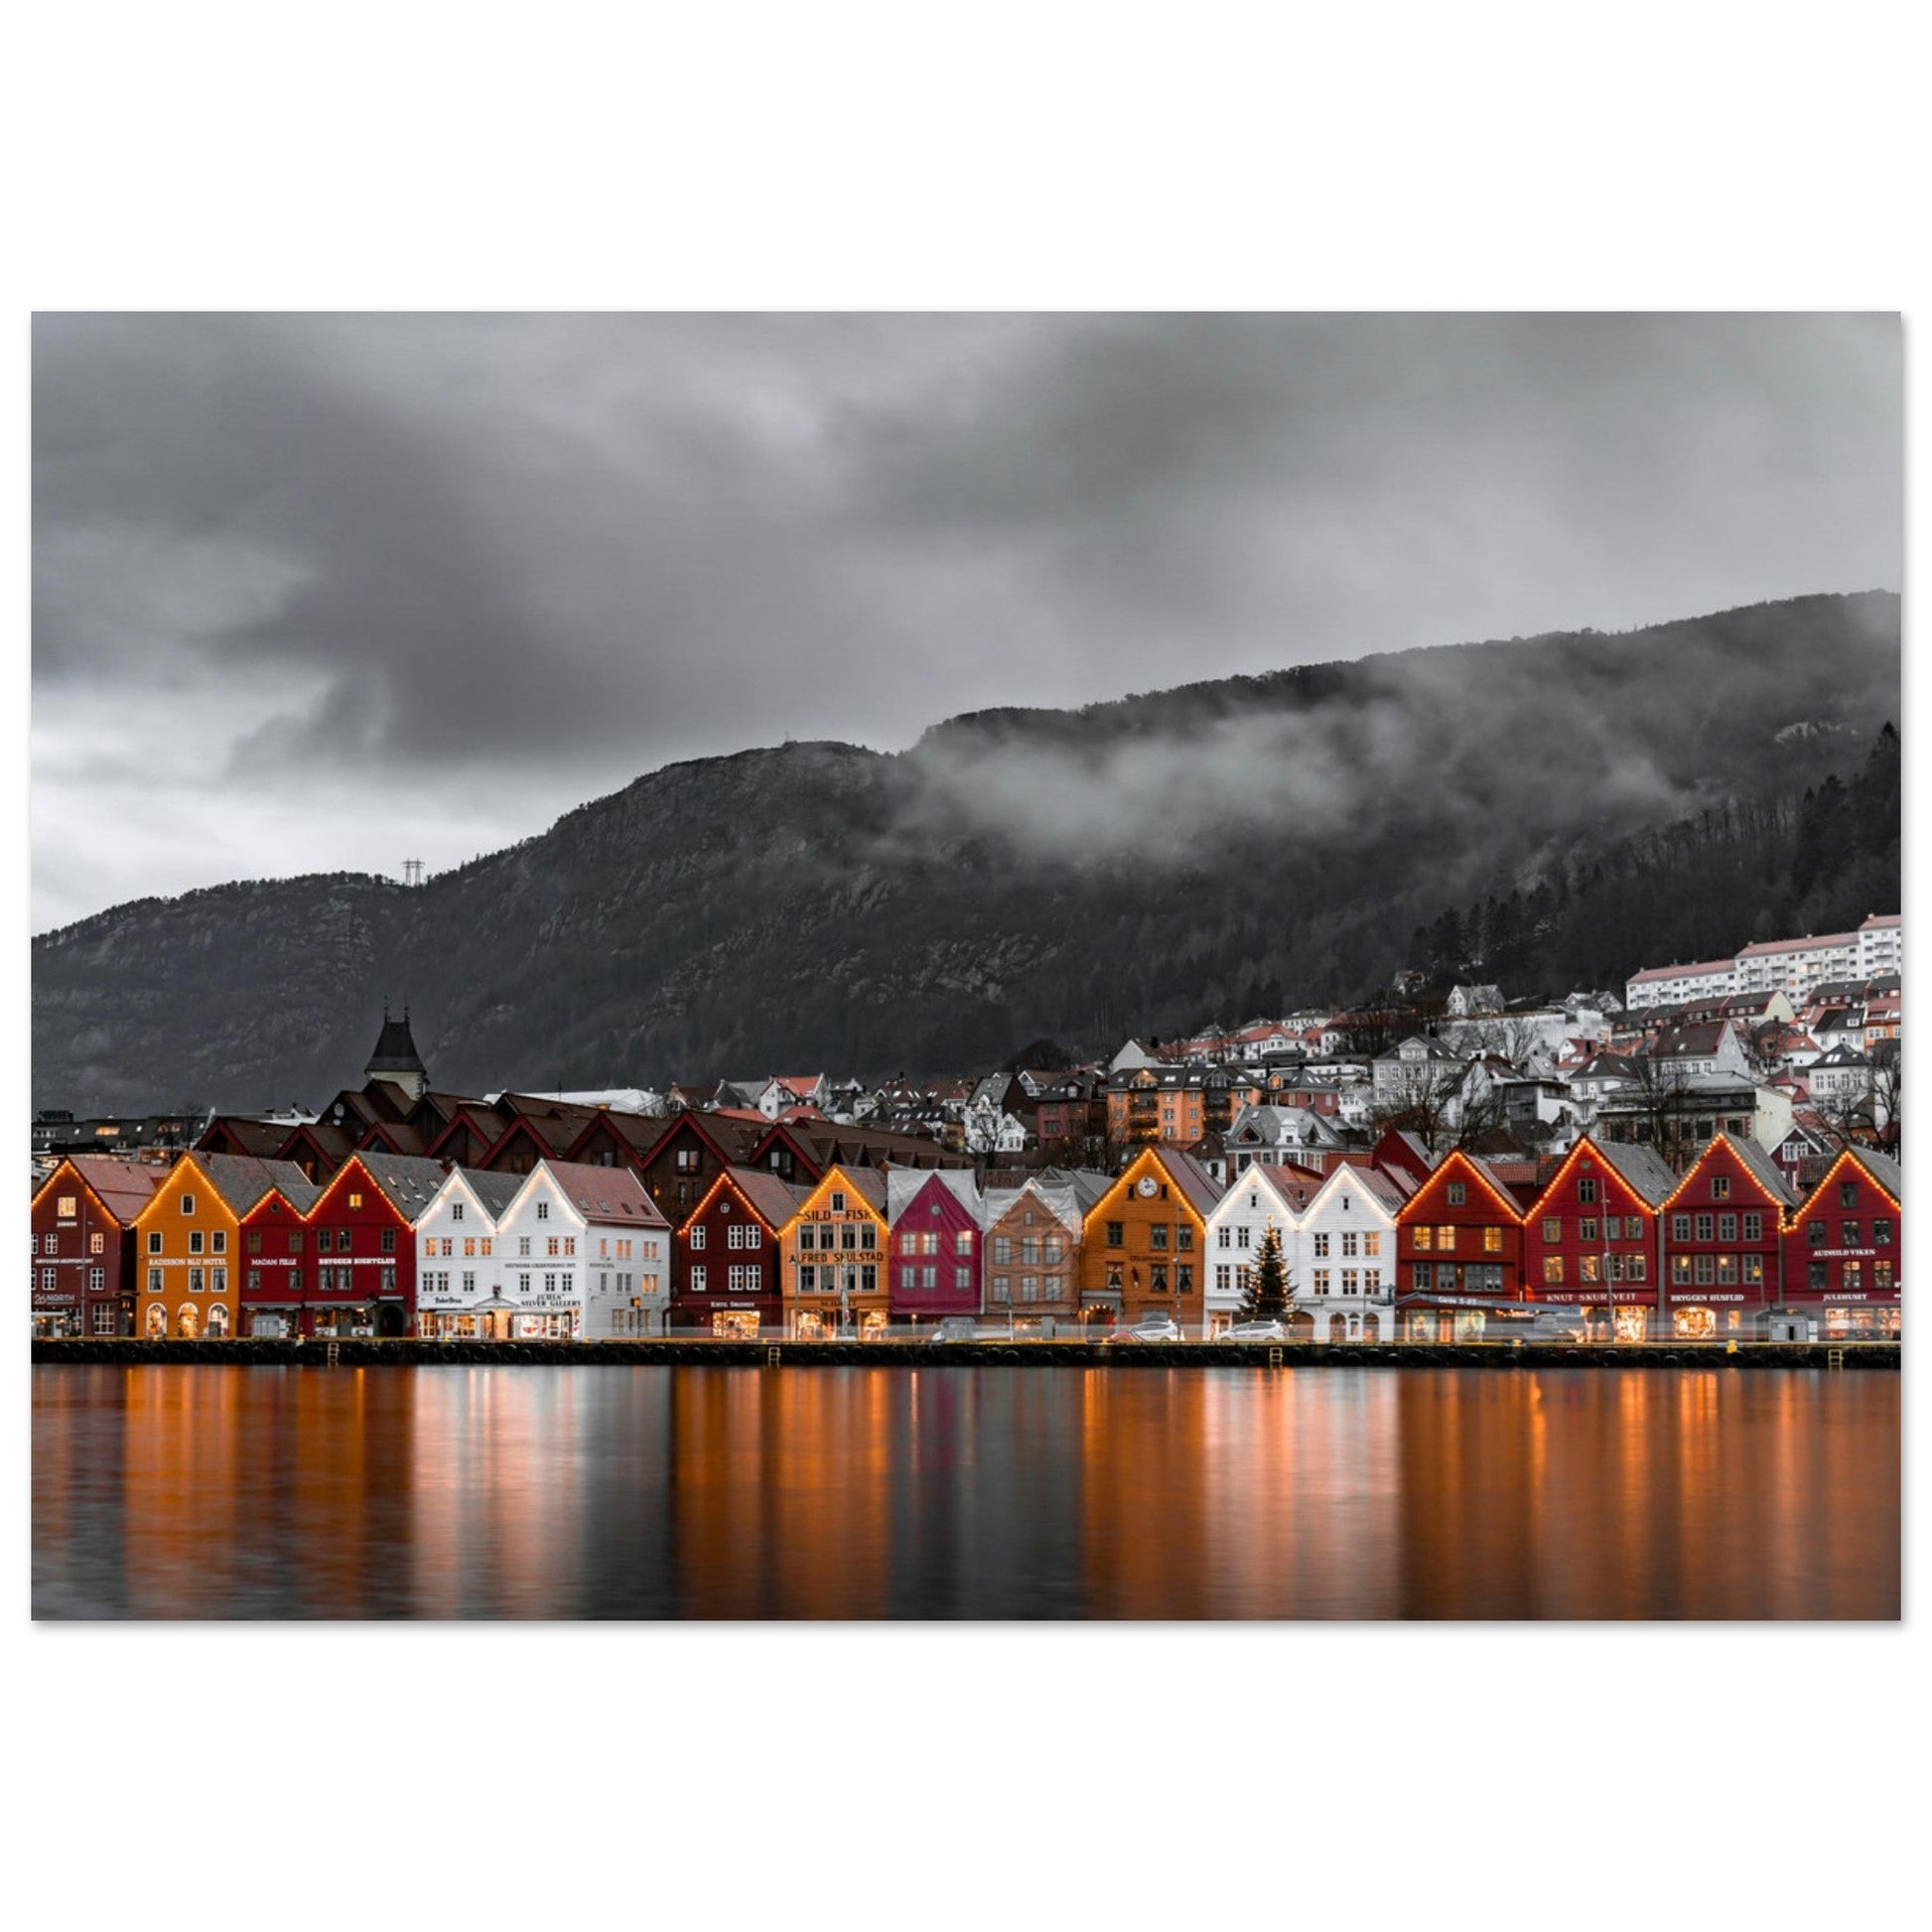 Vente Photo des Îles Lofoten, Norvège #5 - Tableau photo paysage